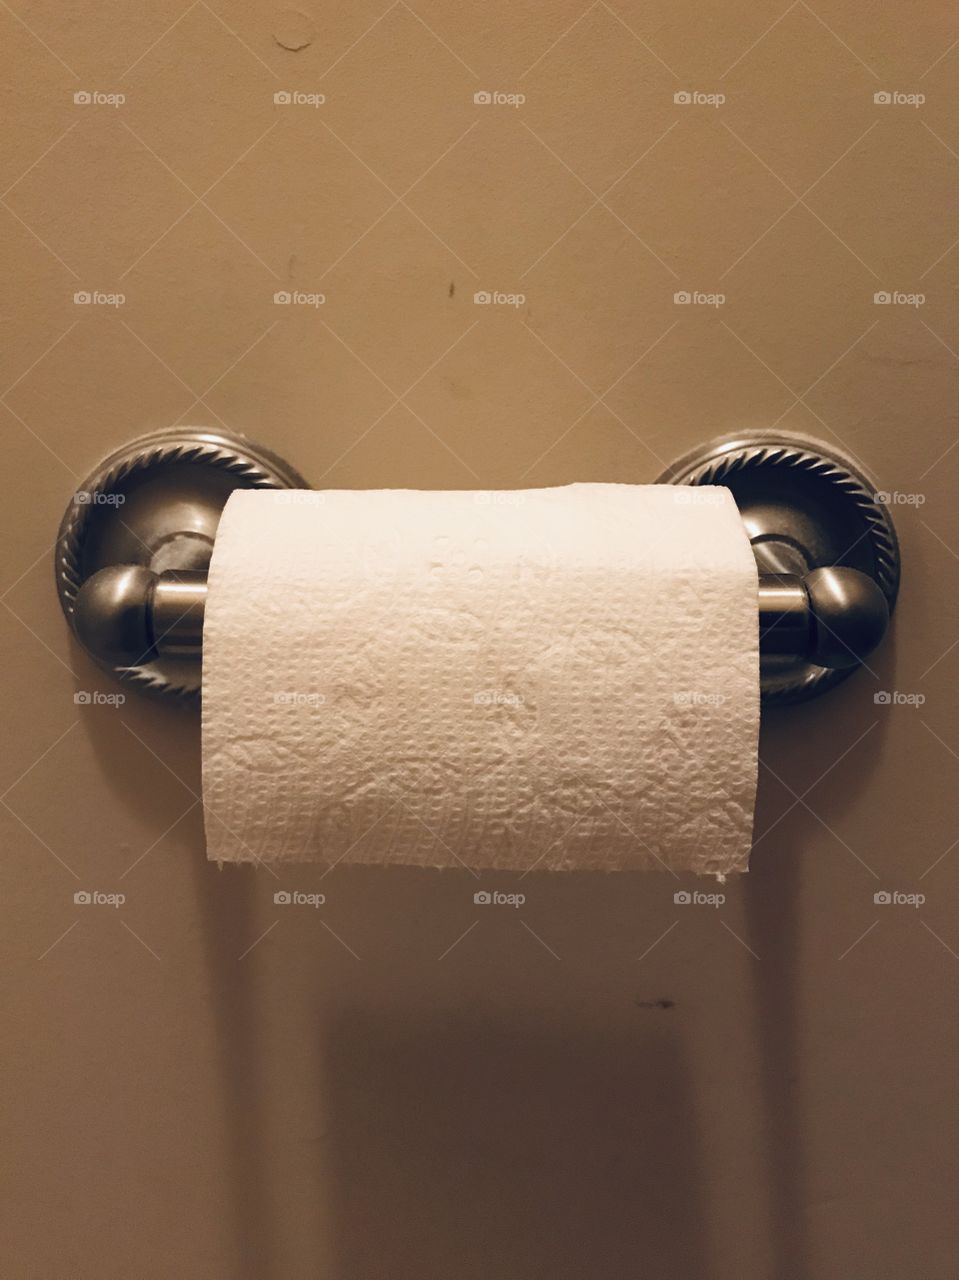 Still Life: Toilet Paper